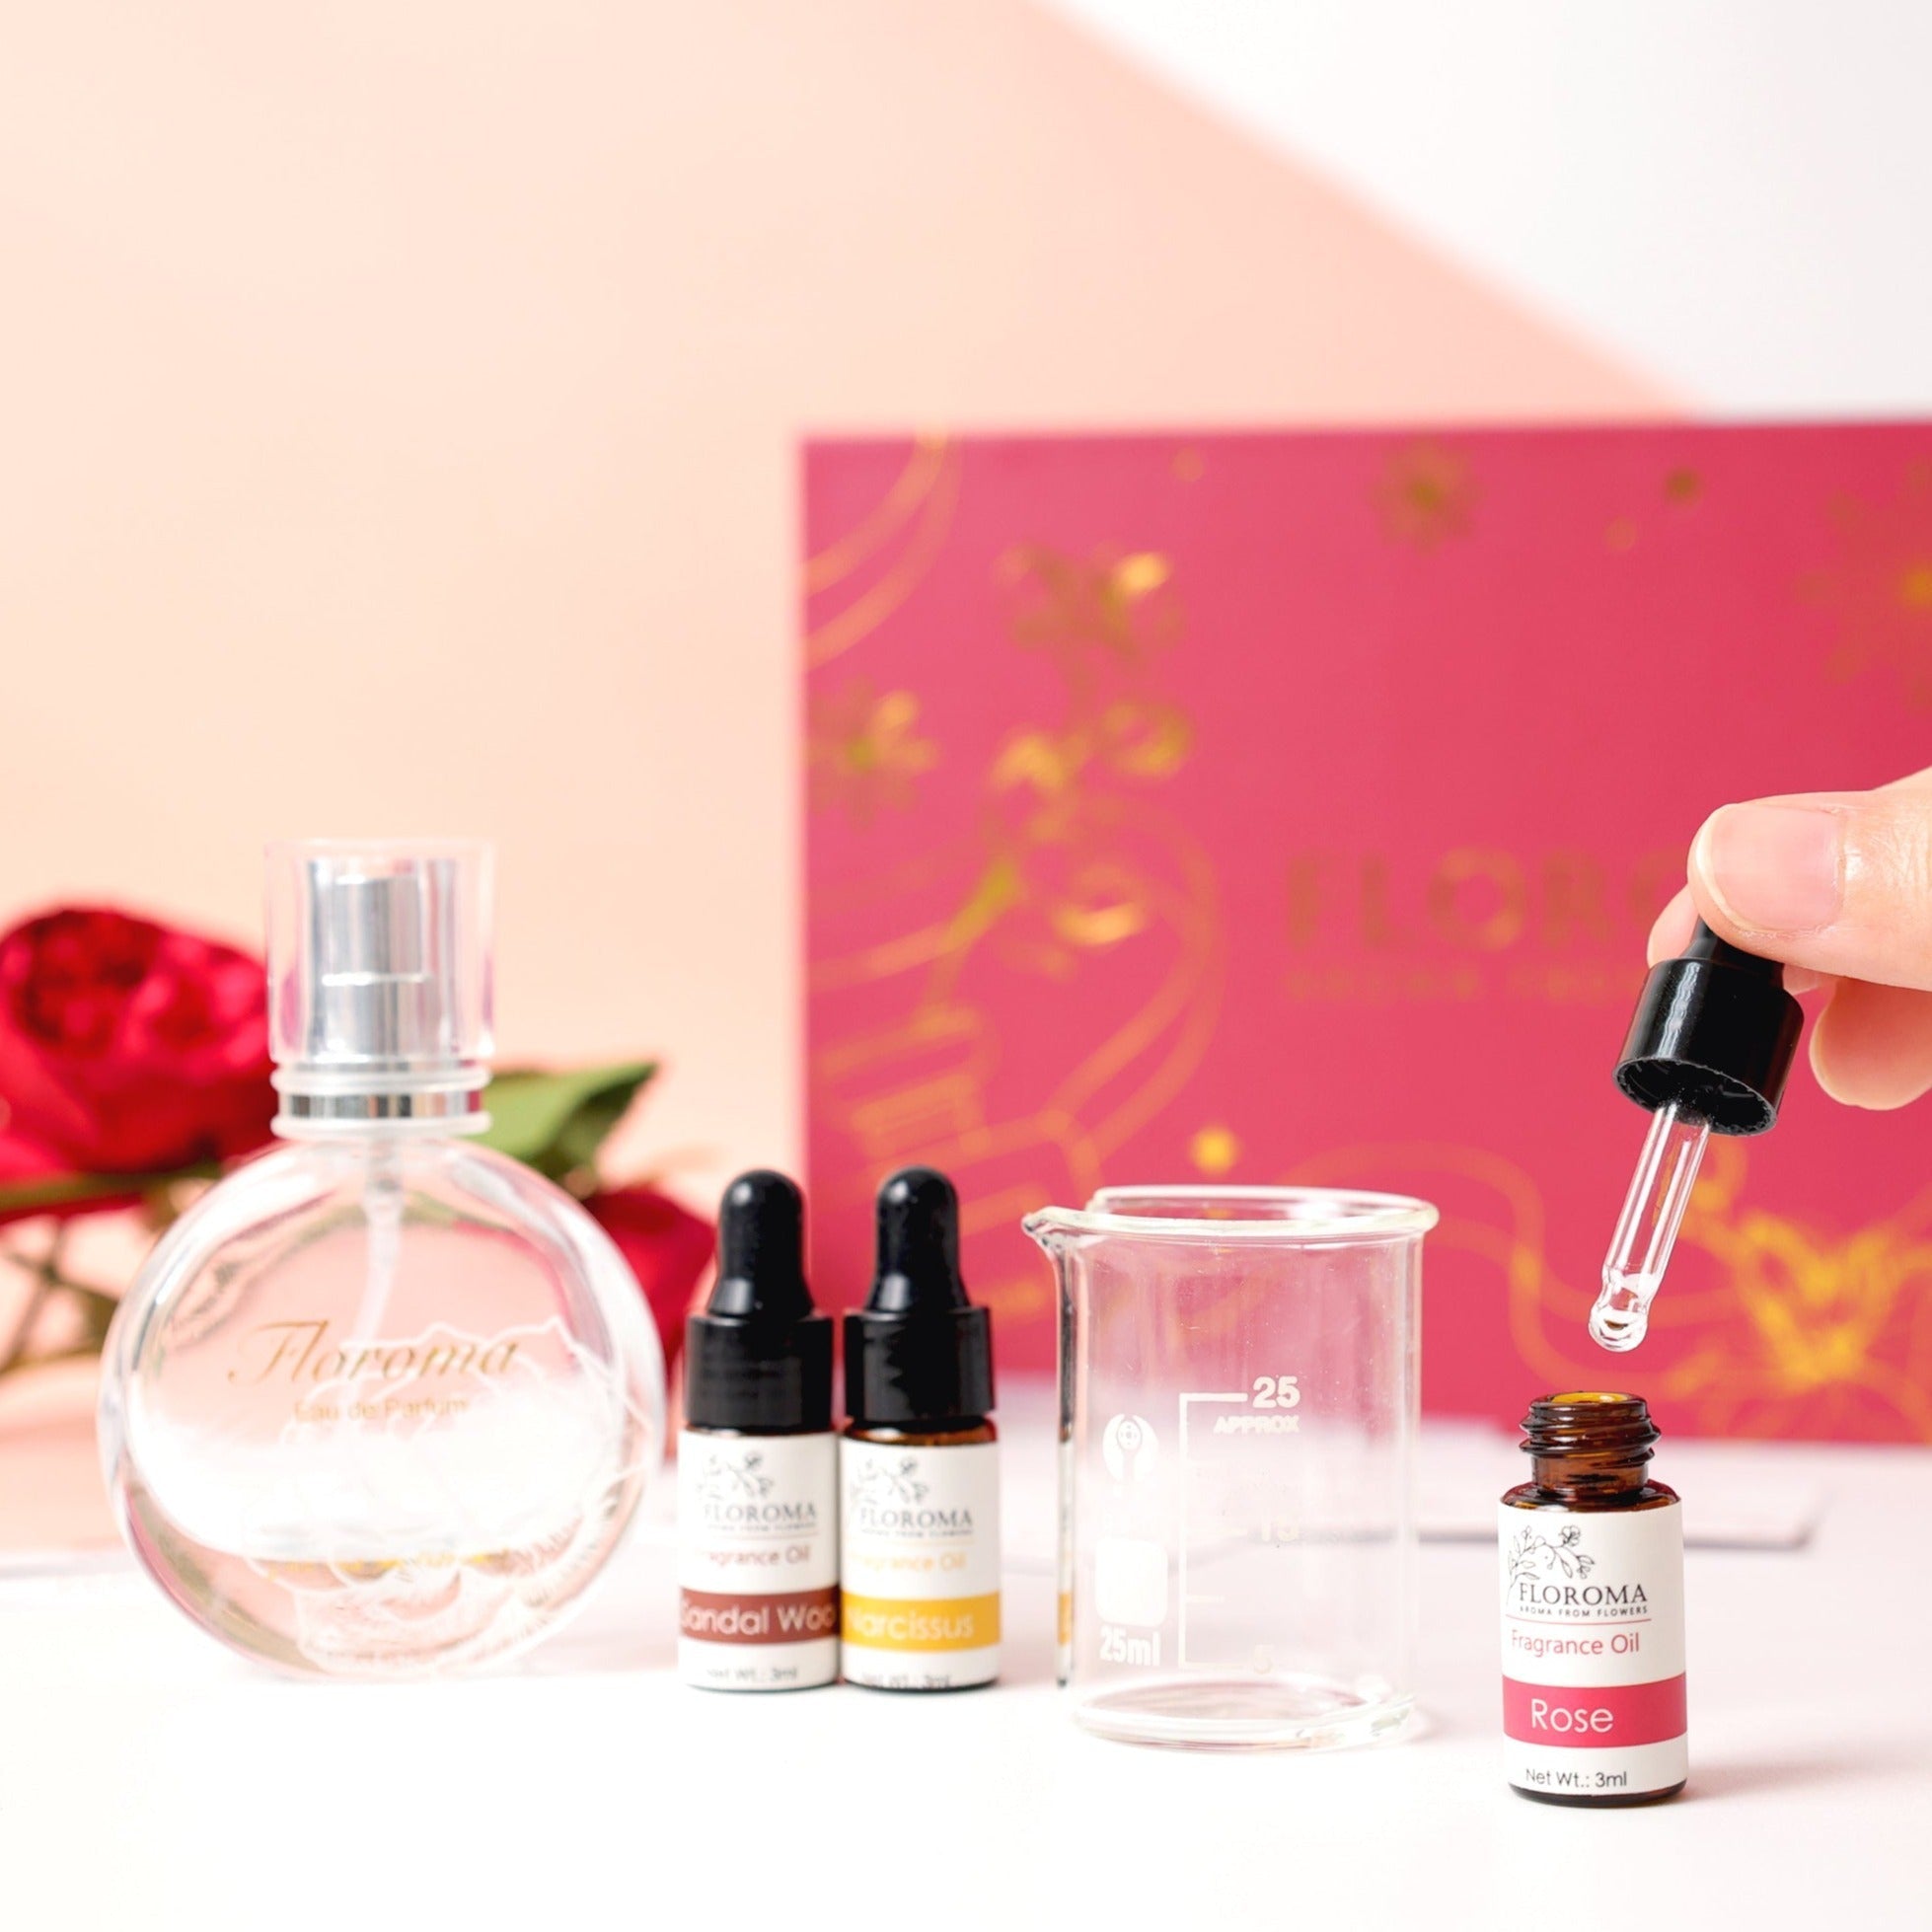 【網店免運限定】單人自調香水套裝 DIY Perfume Box Set + 調香教學課程